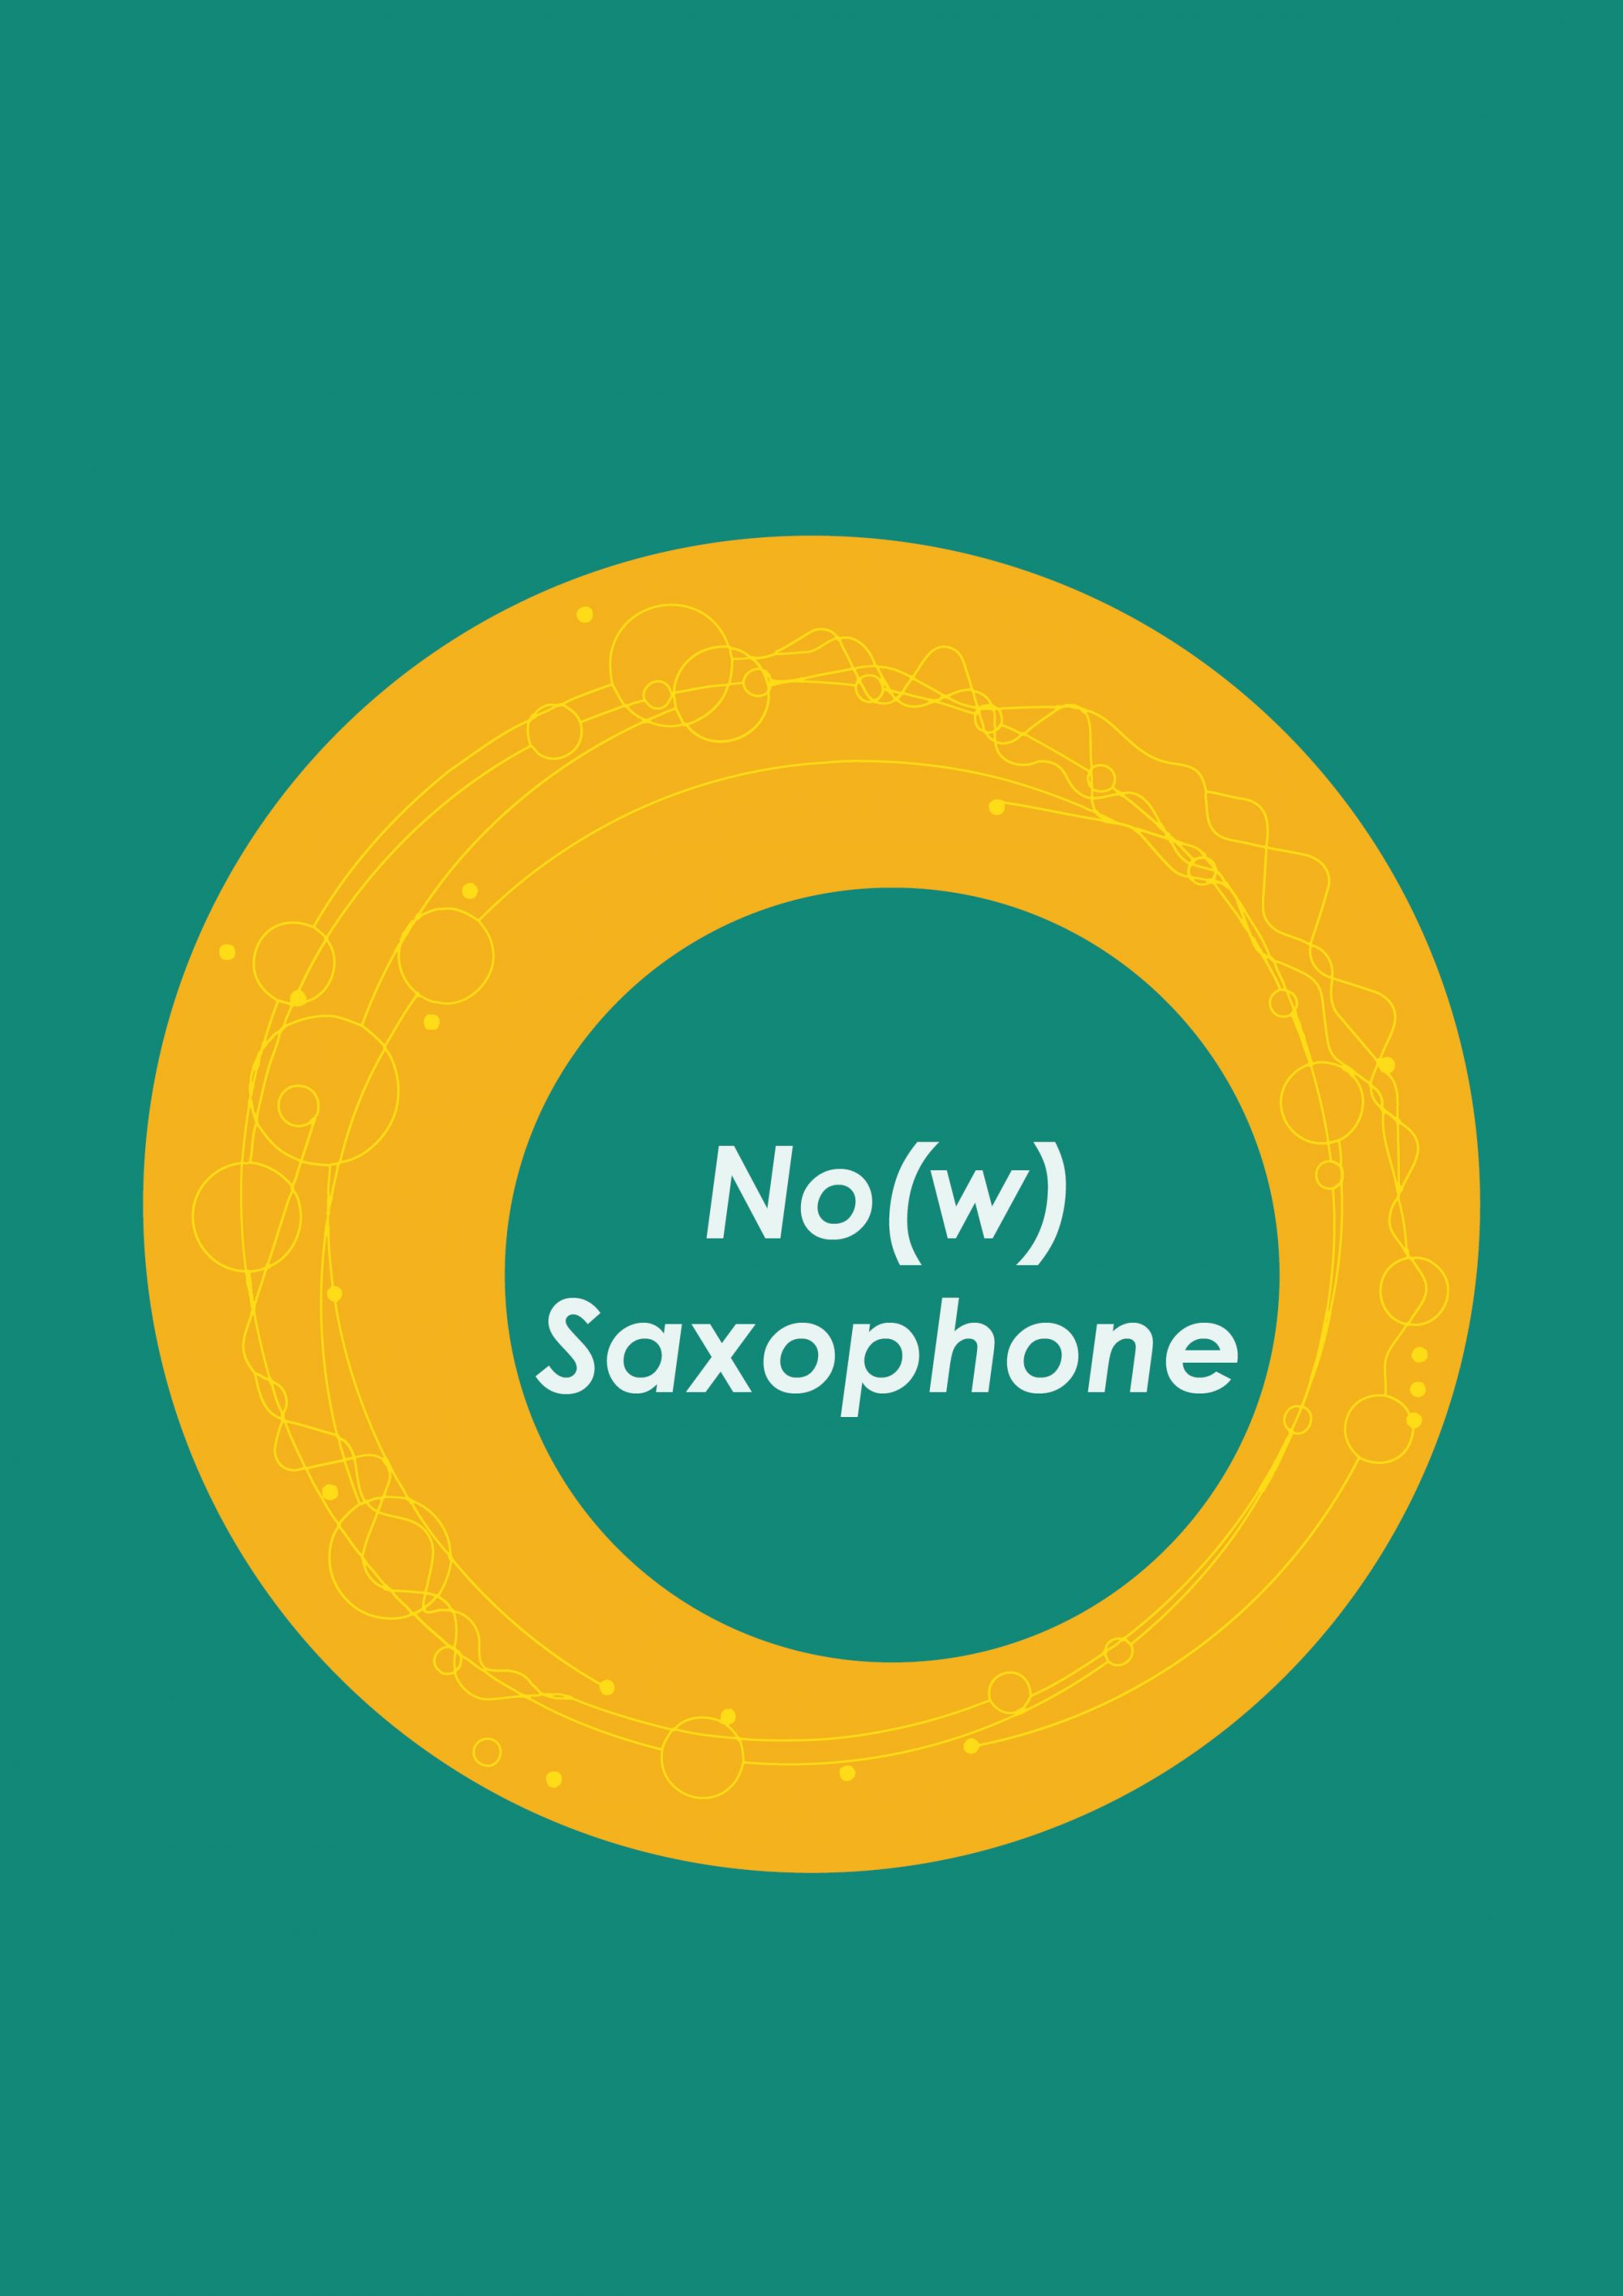 No(w) Saxophone